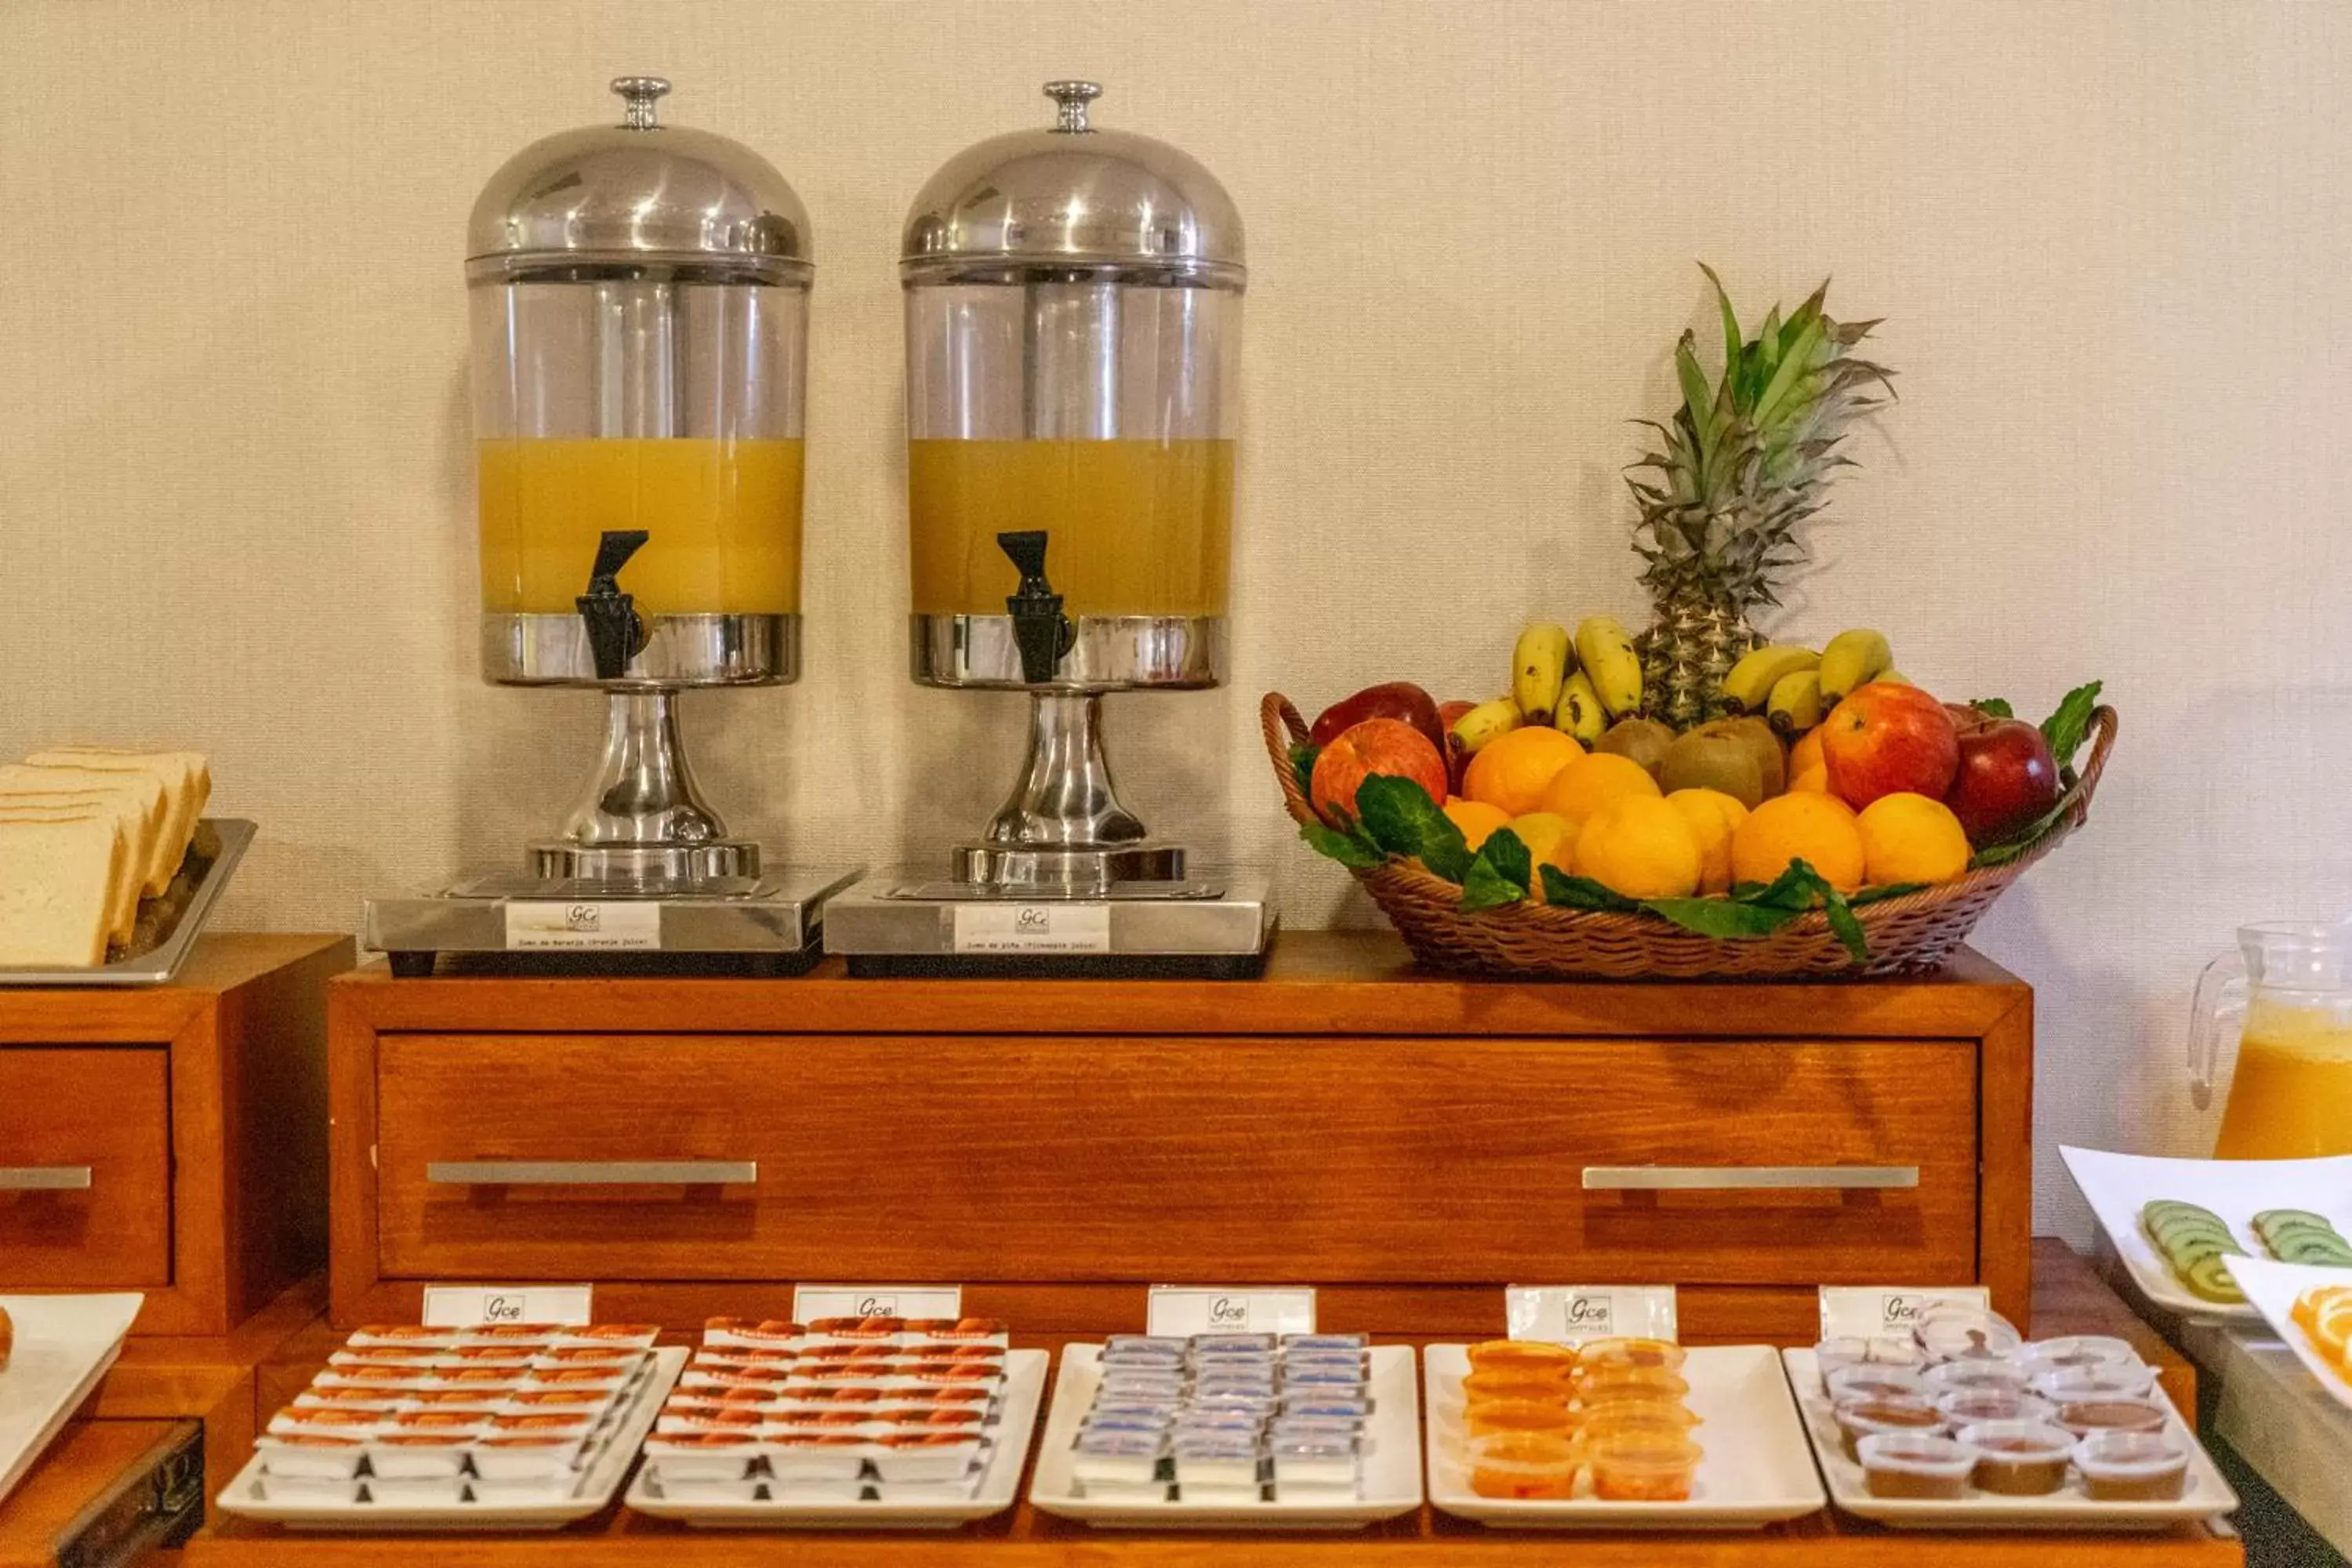 Buffet breakfast in Gce Hoteles